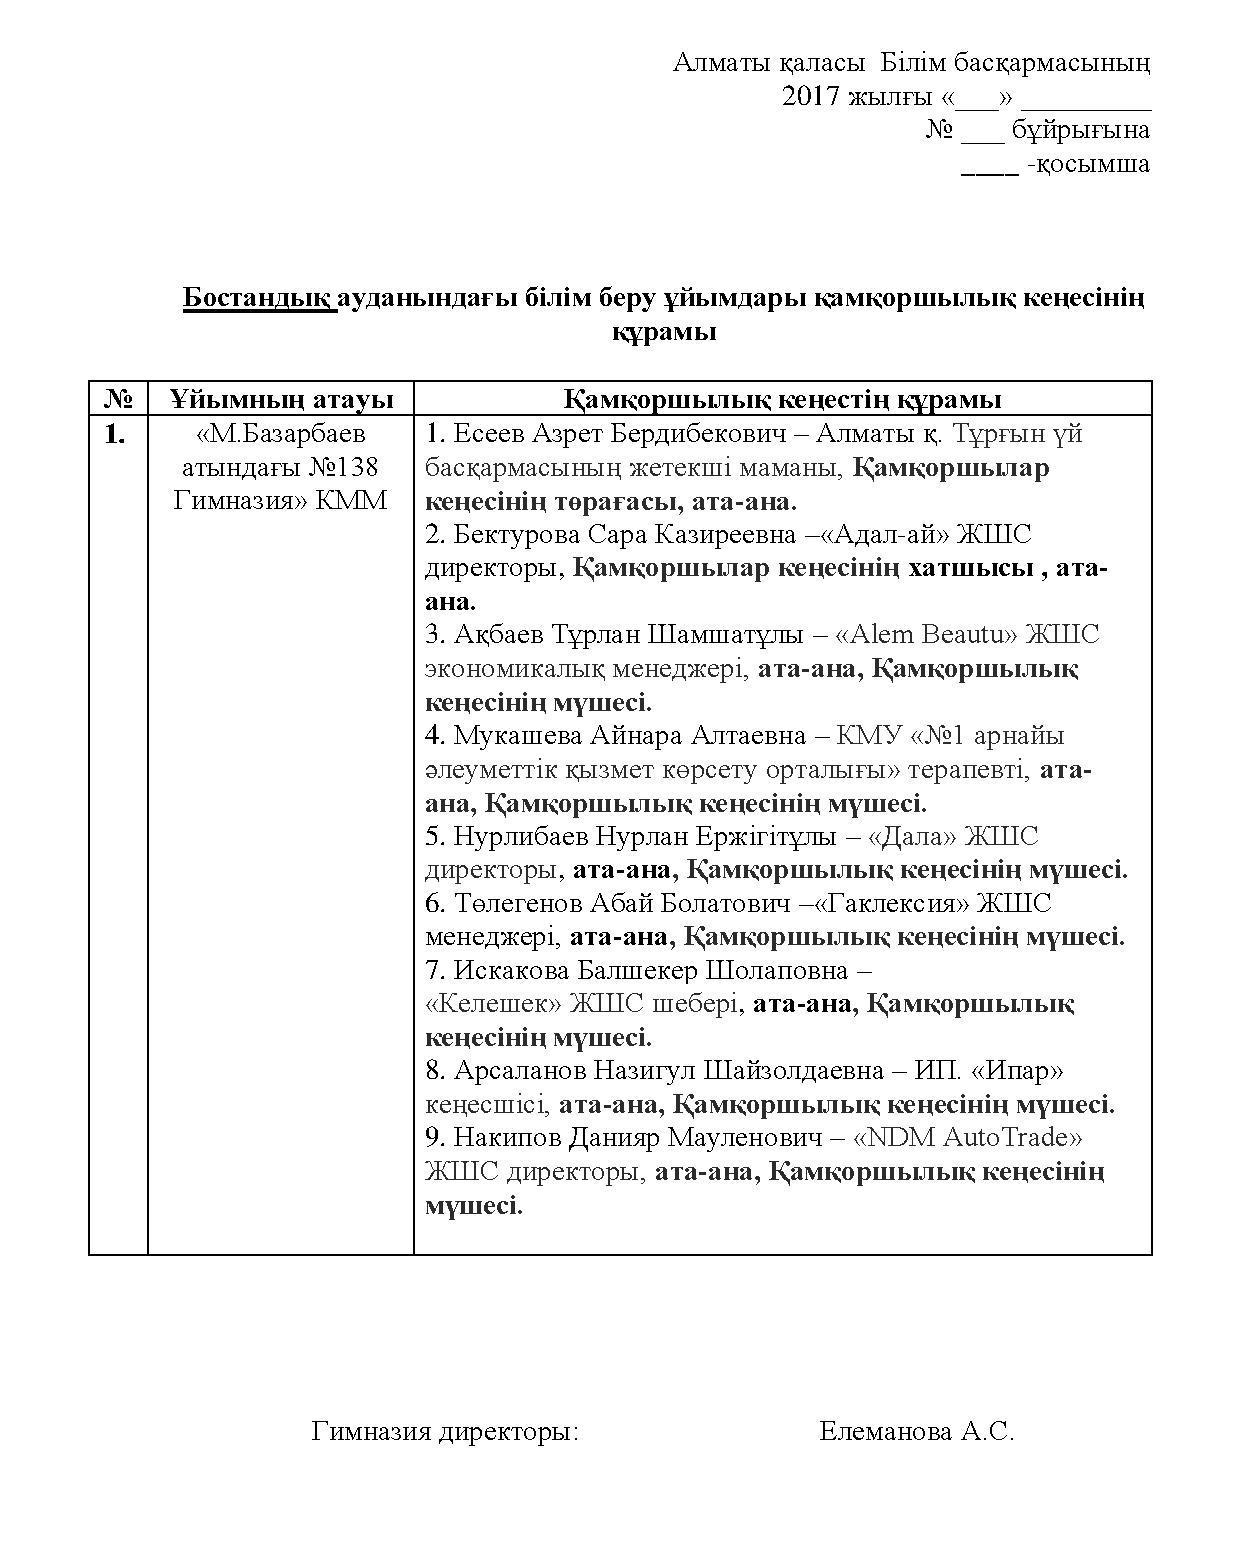 Бостандық ауданындағы білім беру ұйымдары қамқоршылық кеңесінің құрамы